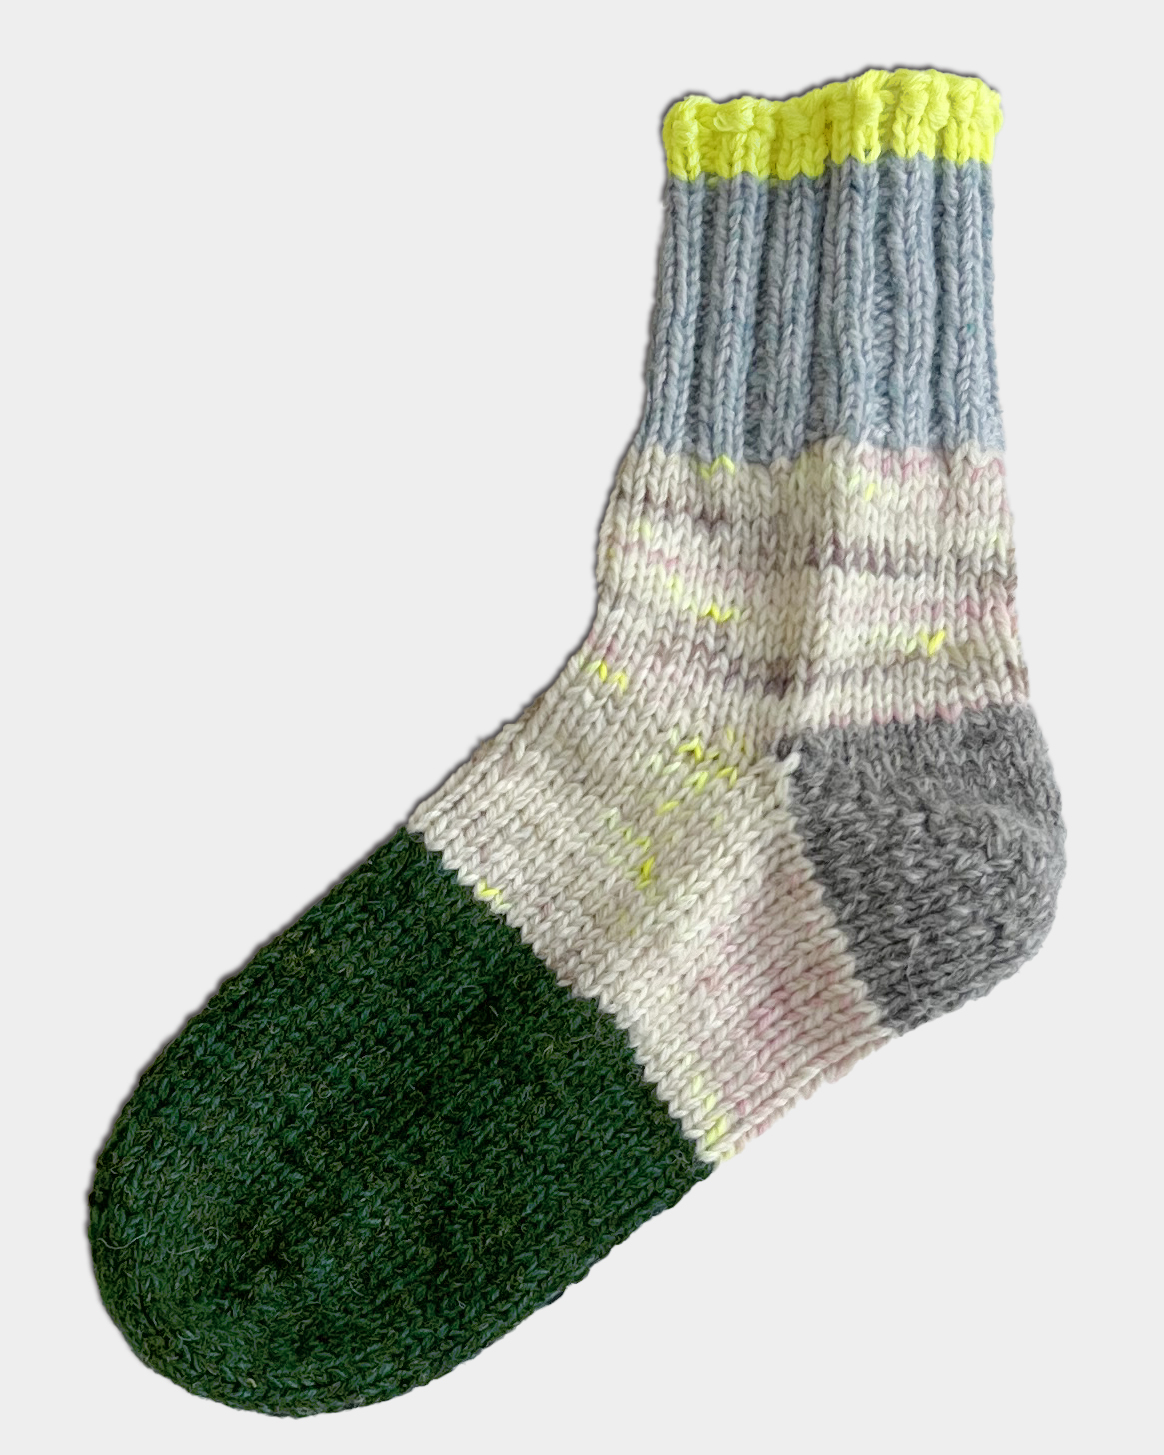 ちきくつした 手編みの靴下 | Giiton-Store(ギートンストア) | Giiton 